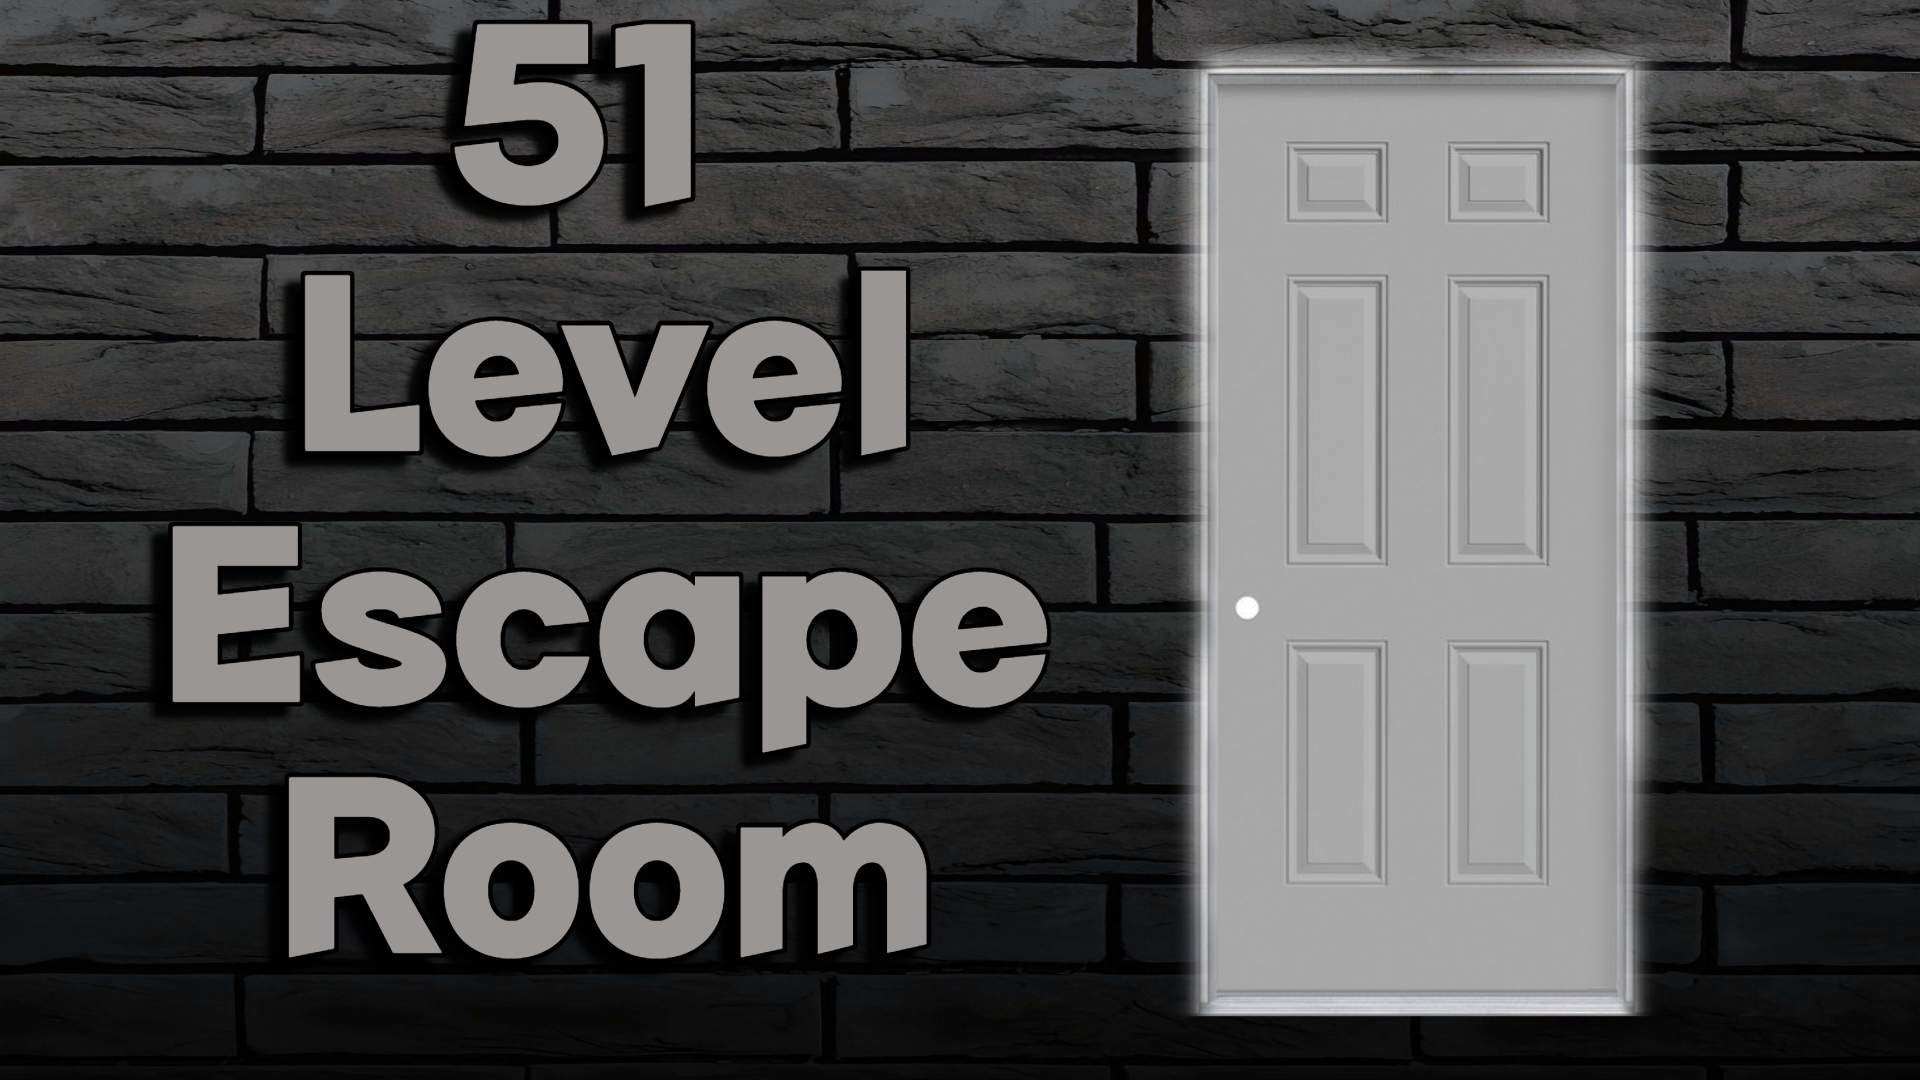 51 Level Escape Room